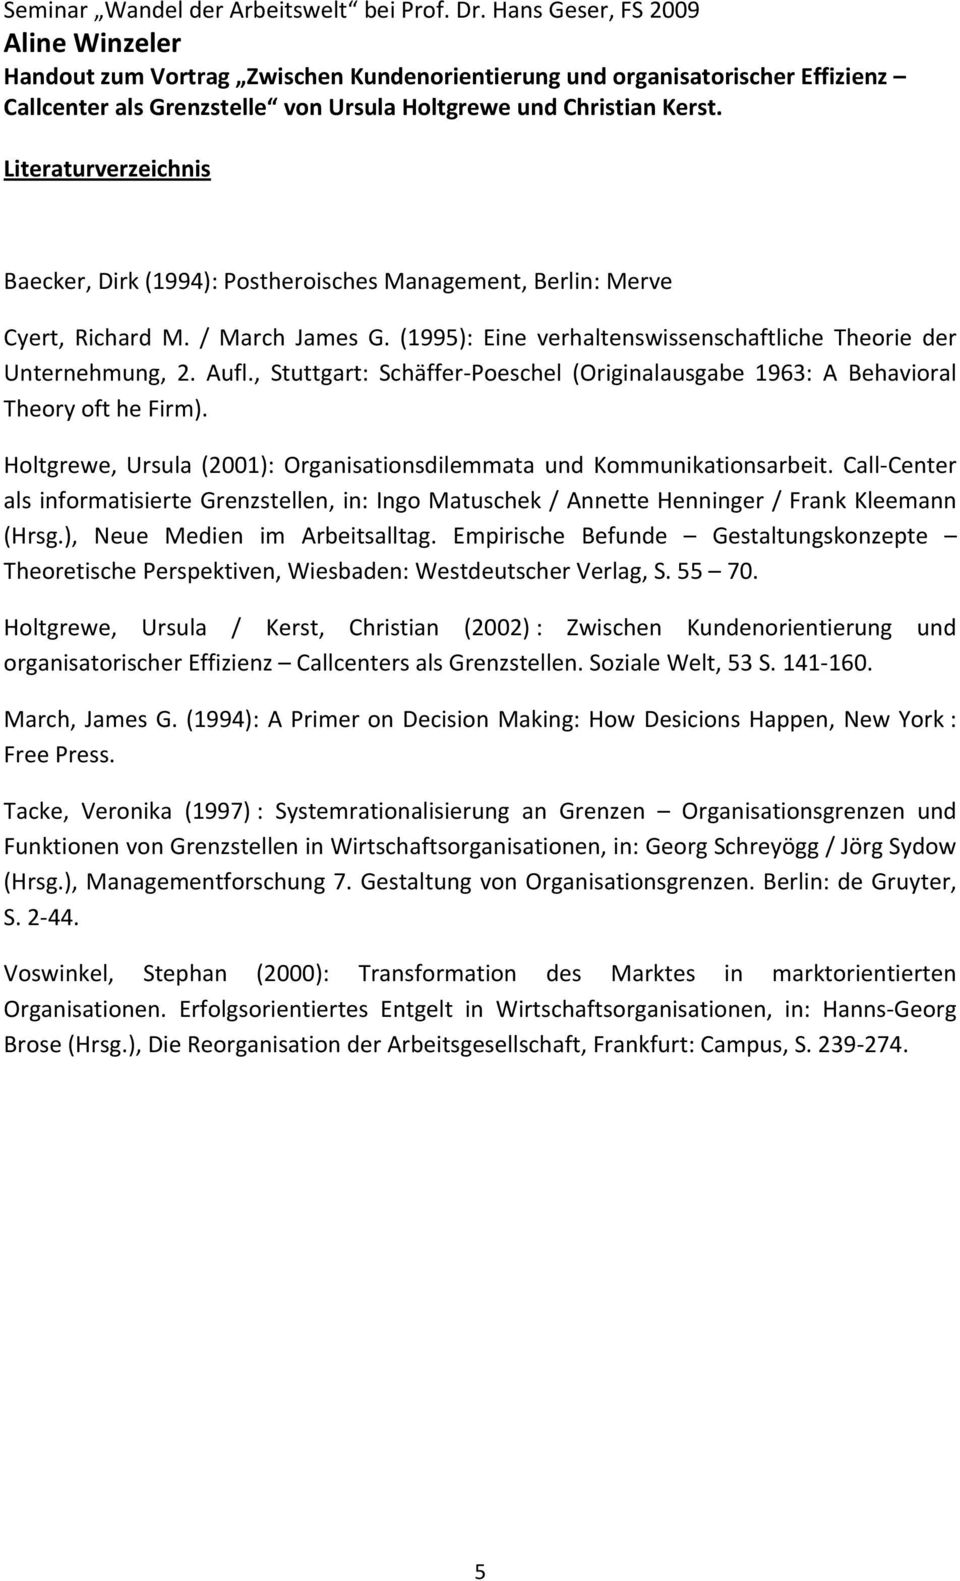 Call Center als informatisierte Grenzstellen, in: Ingo Matuschek / Annette Henninger / Frank Kleemann (Hrsg.), Neue Medien im Arbeitsalltag.